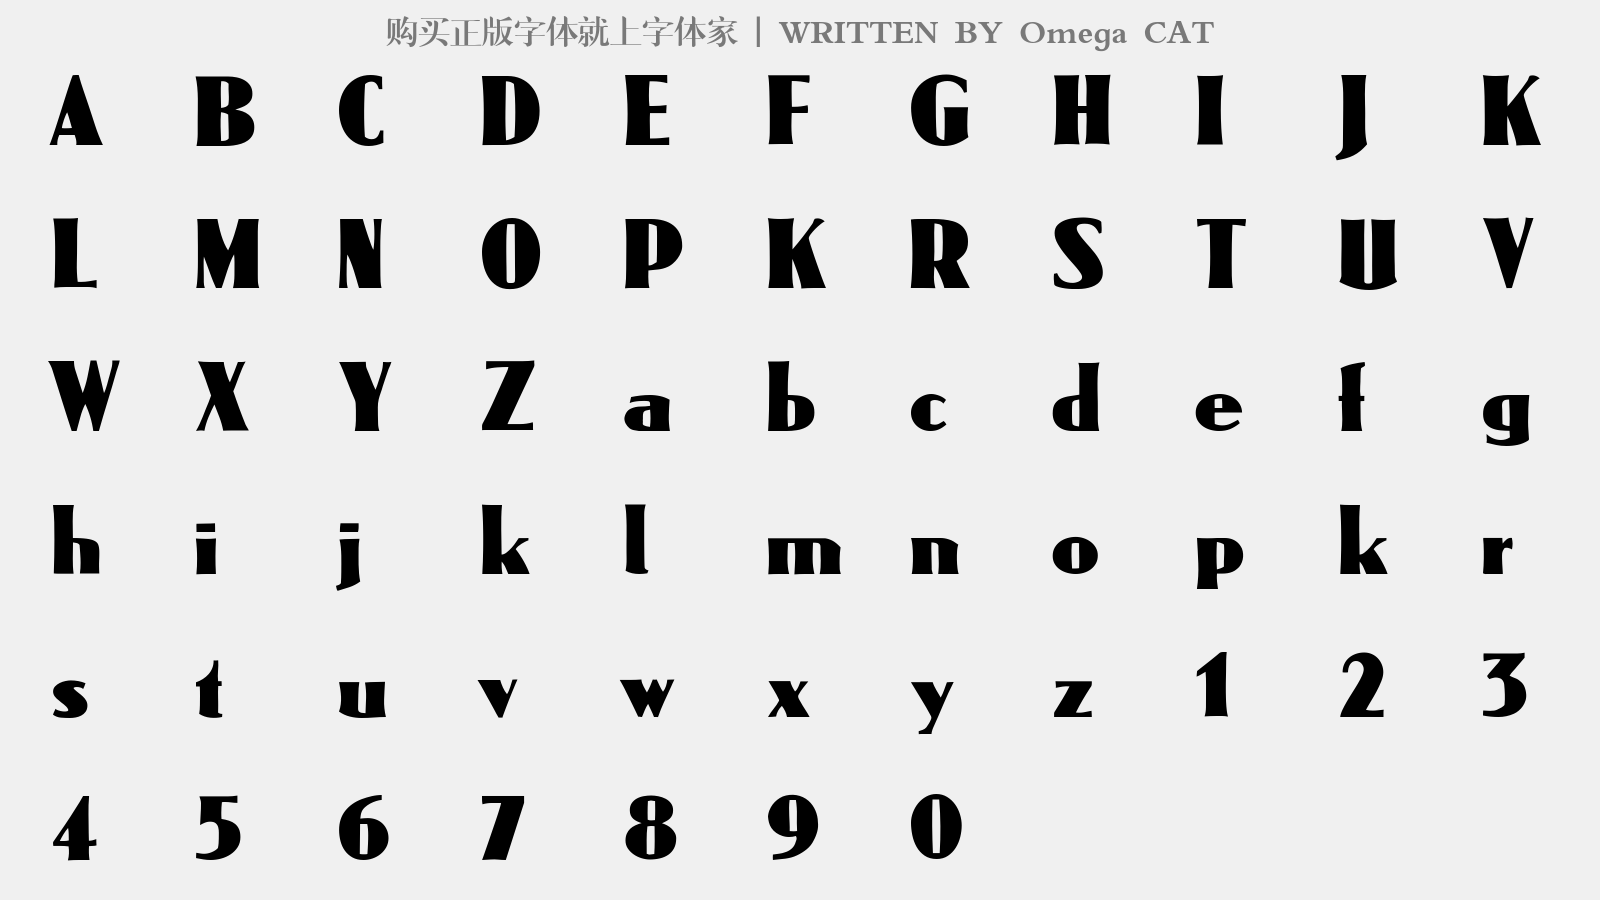 Omega CAT - 大写字母/小写字母/数字